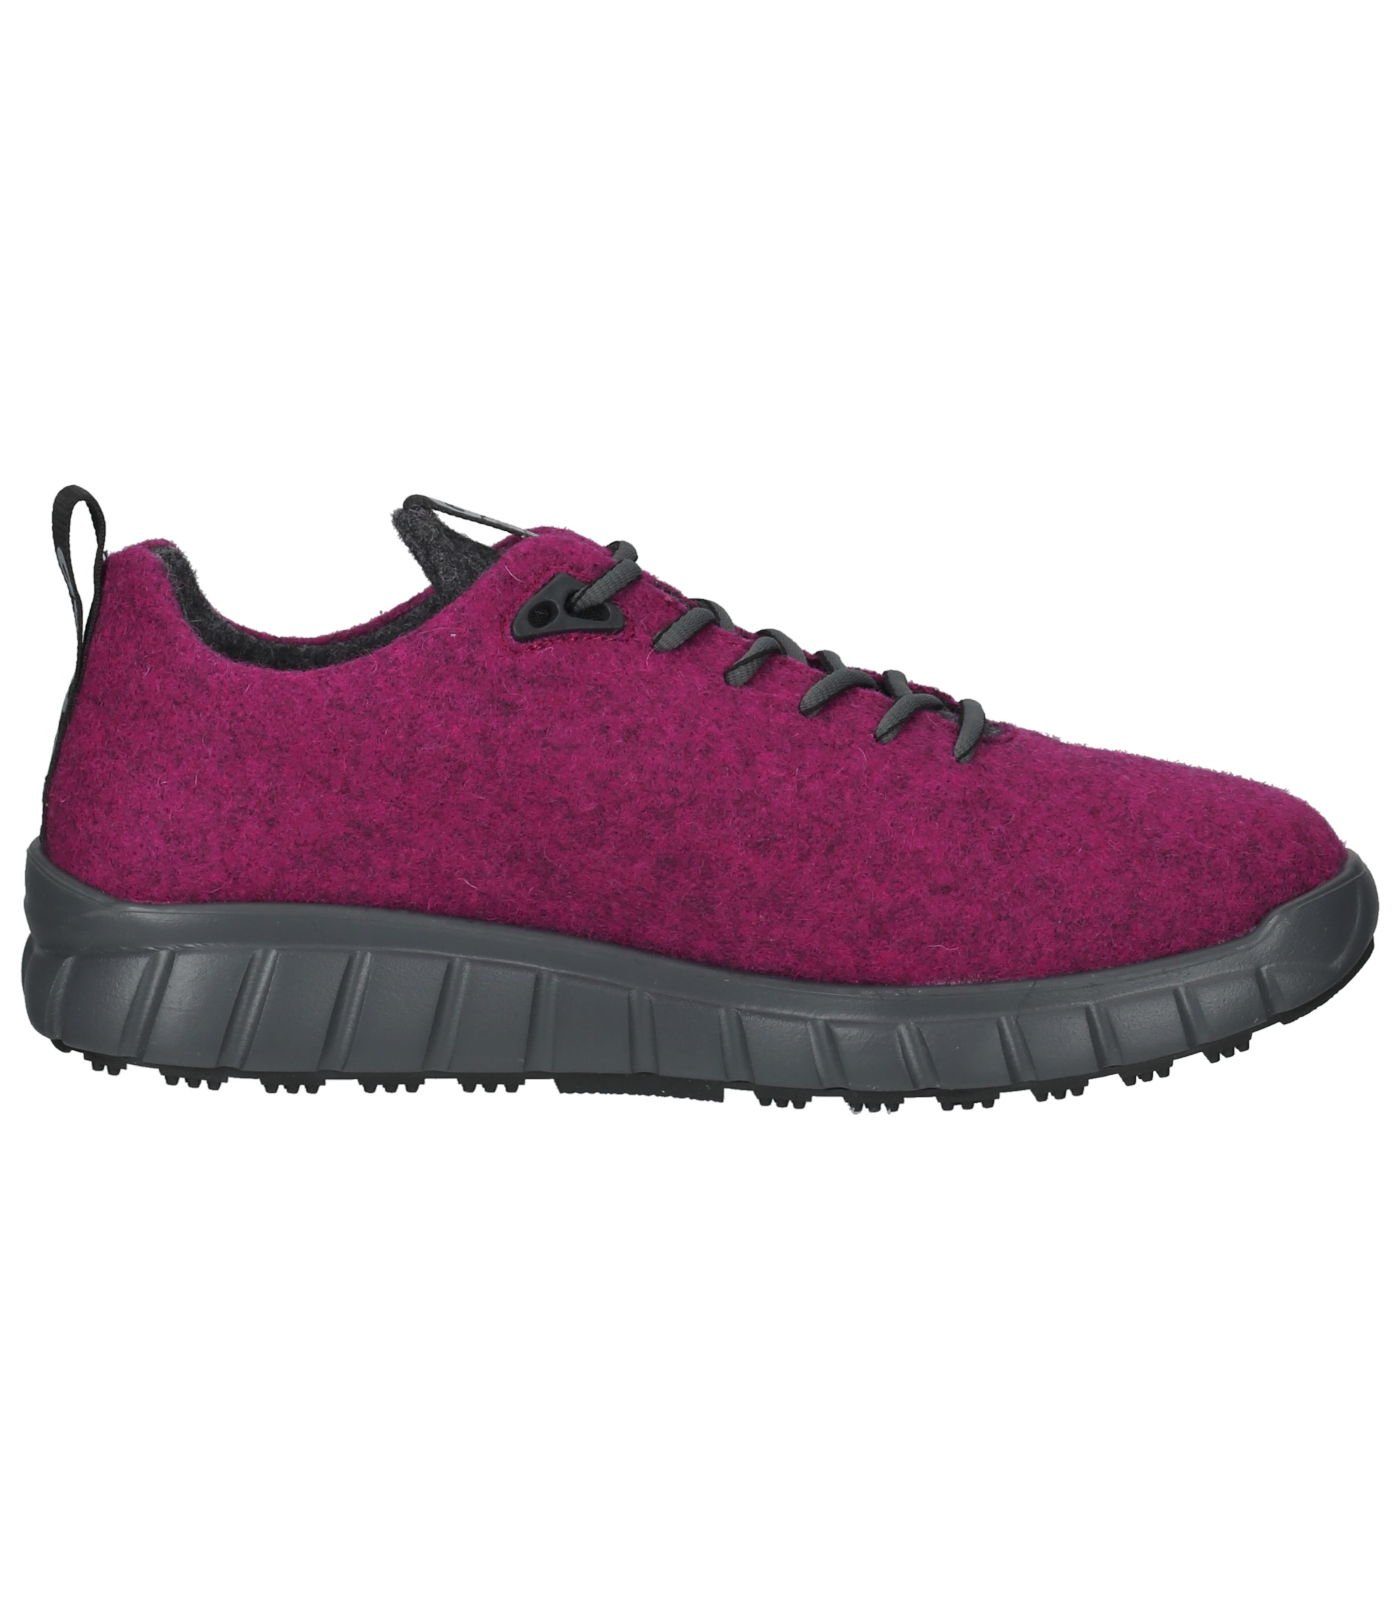 Lederimitat/Textil Sneaker Ganter Pink Sneaker